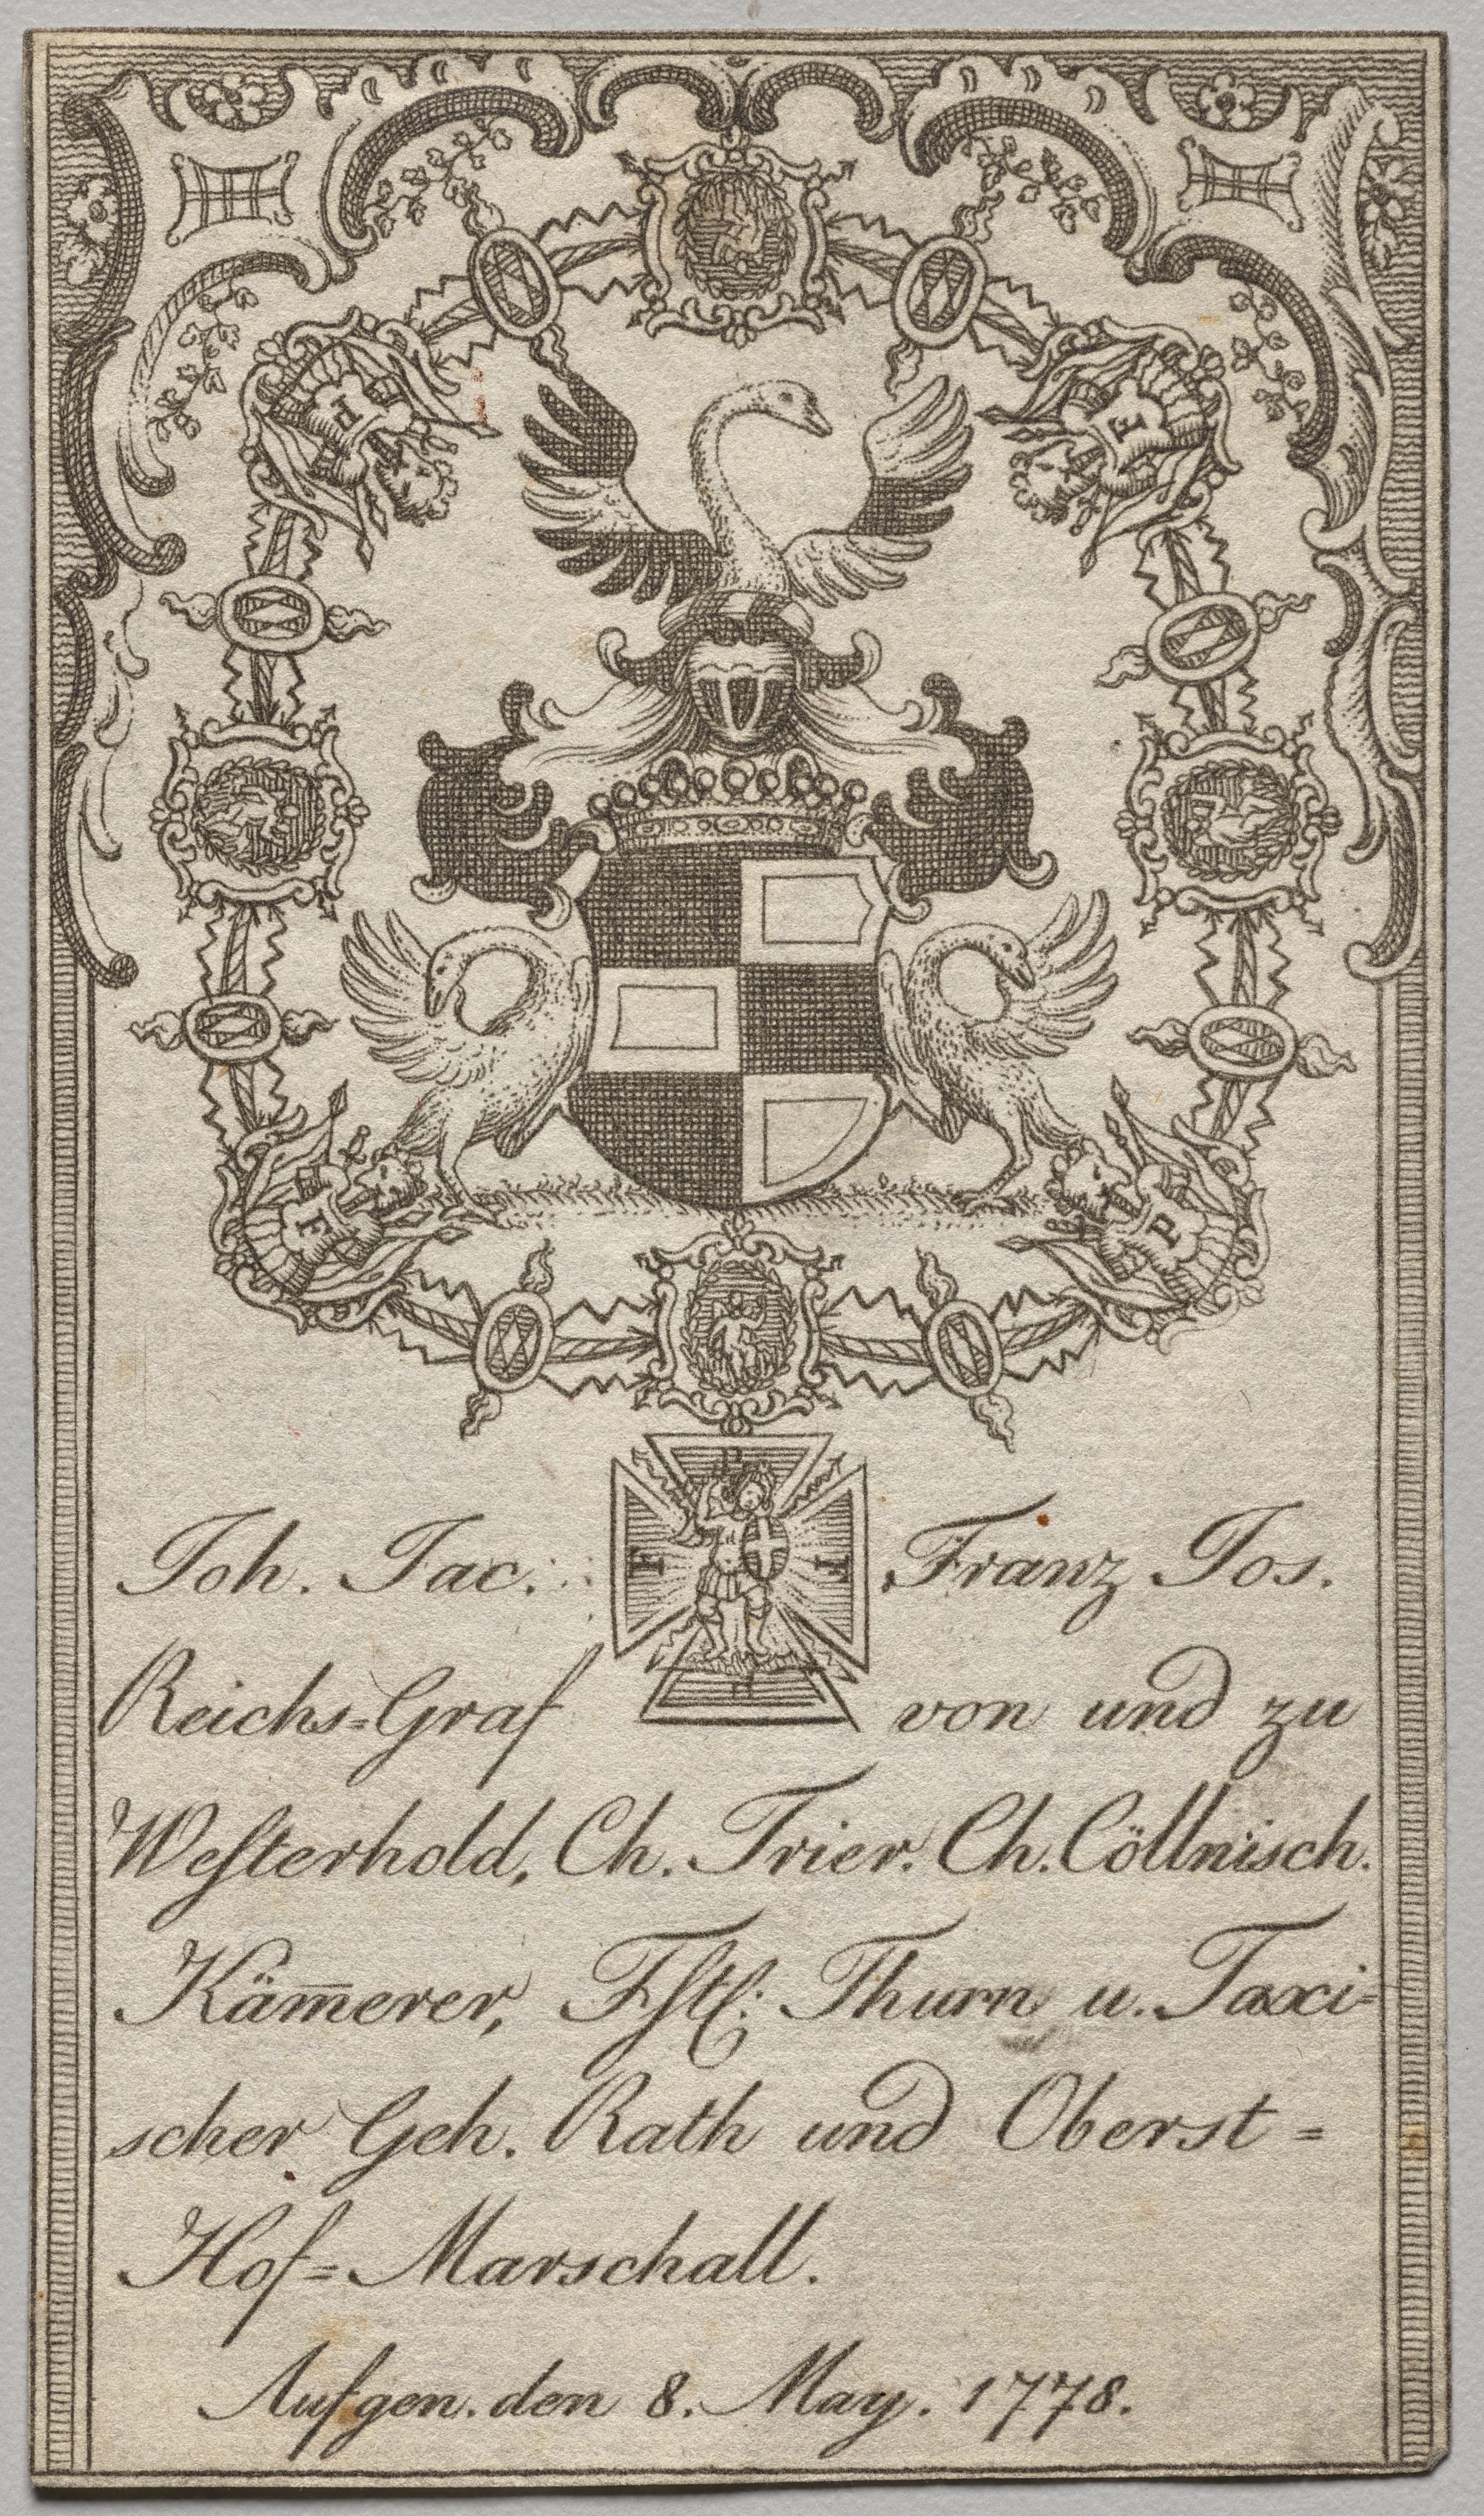 Bookplate: Johan. Jac. Franz-Joseph, Reichs-Graf von Westerhold